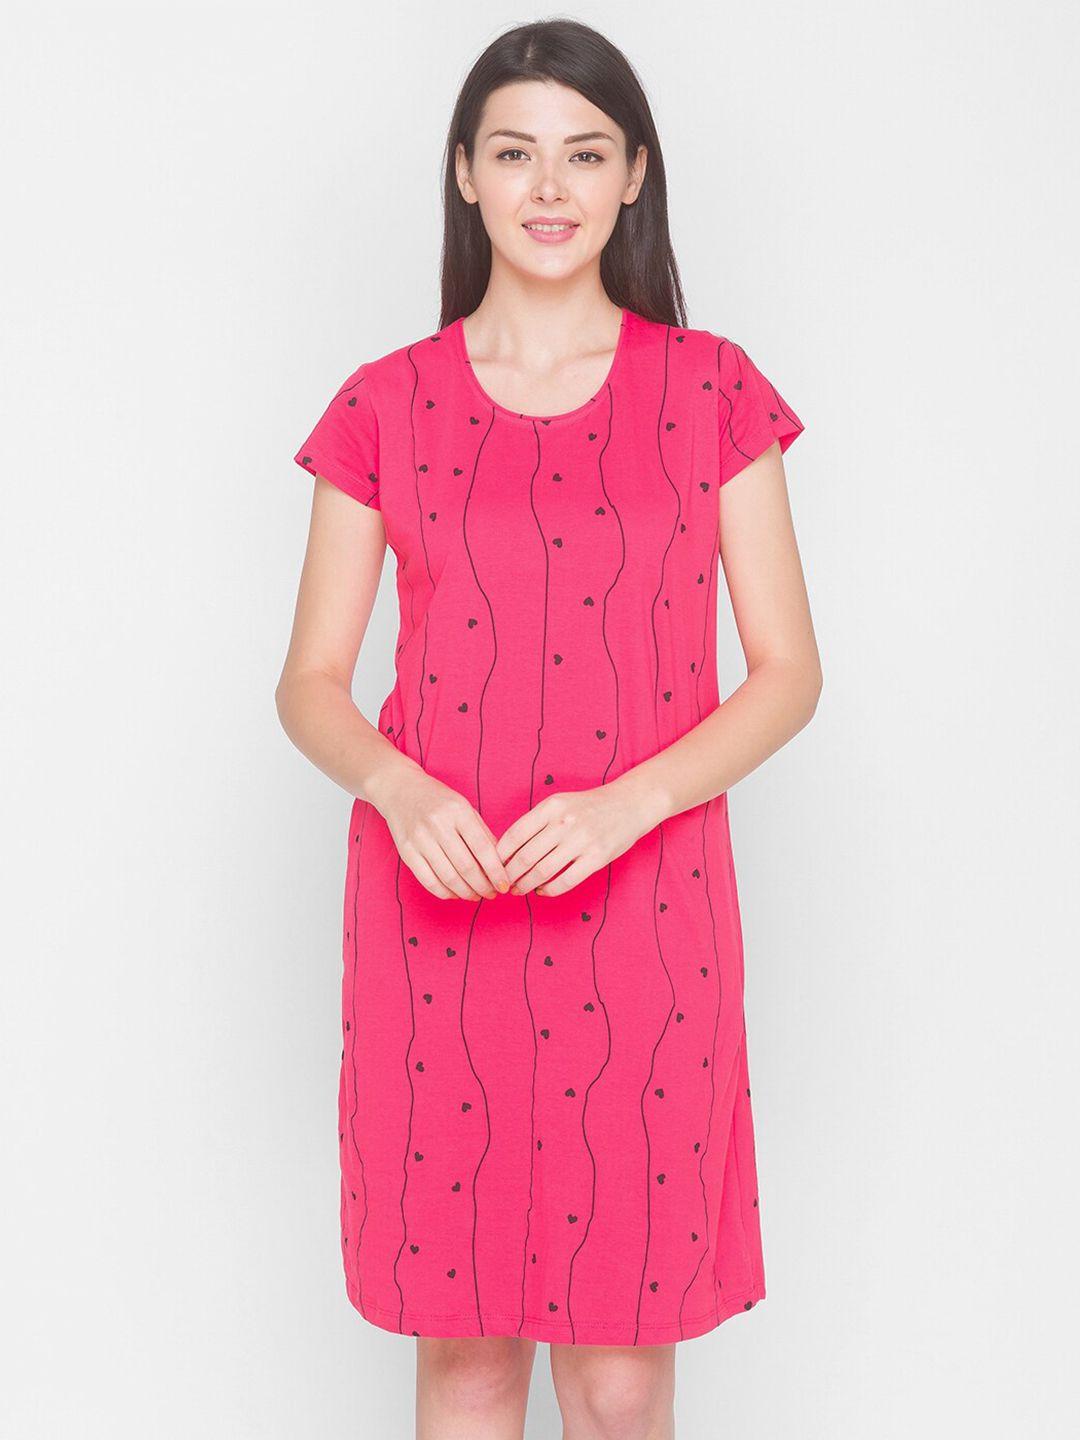 av2-pink-printed-nightdress